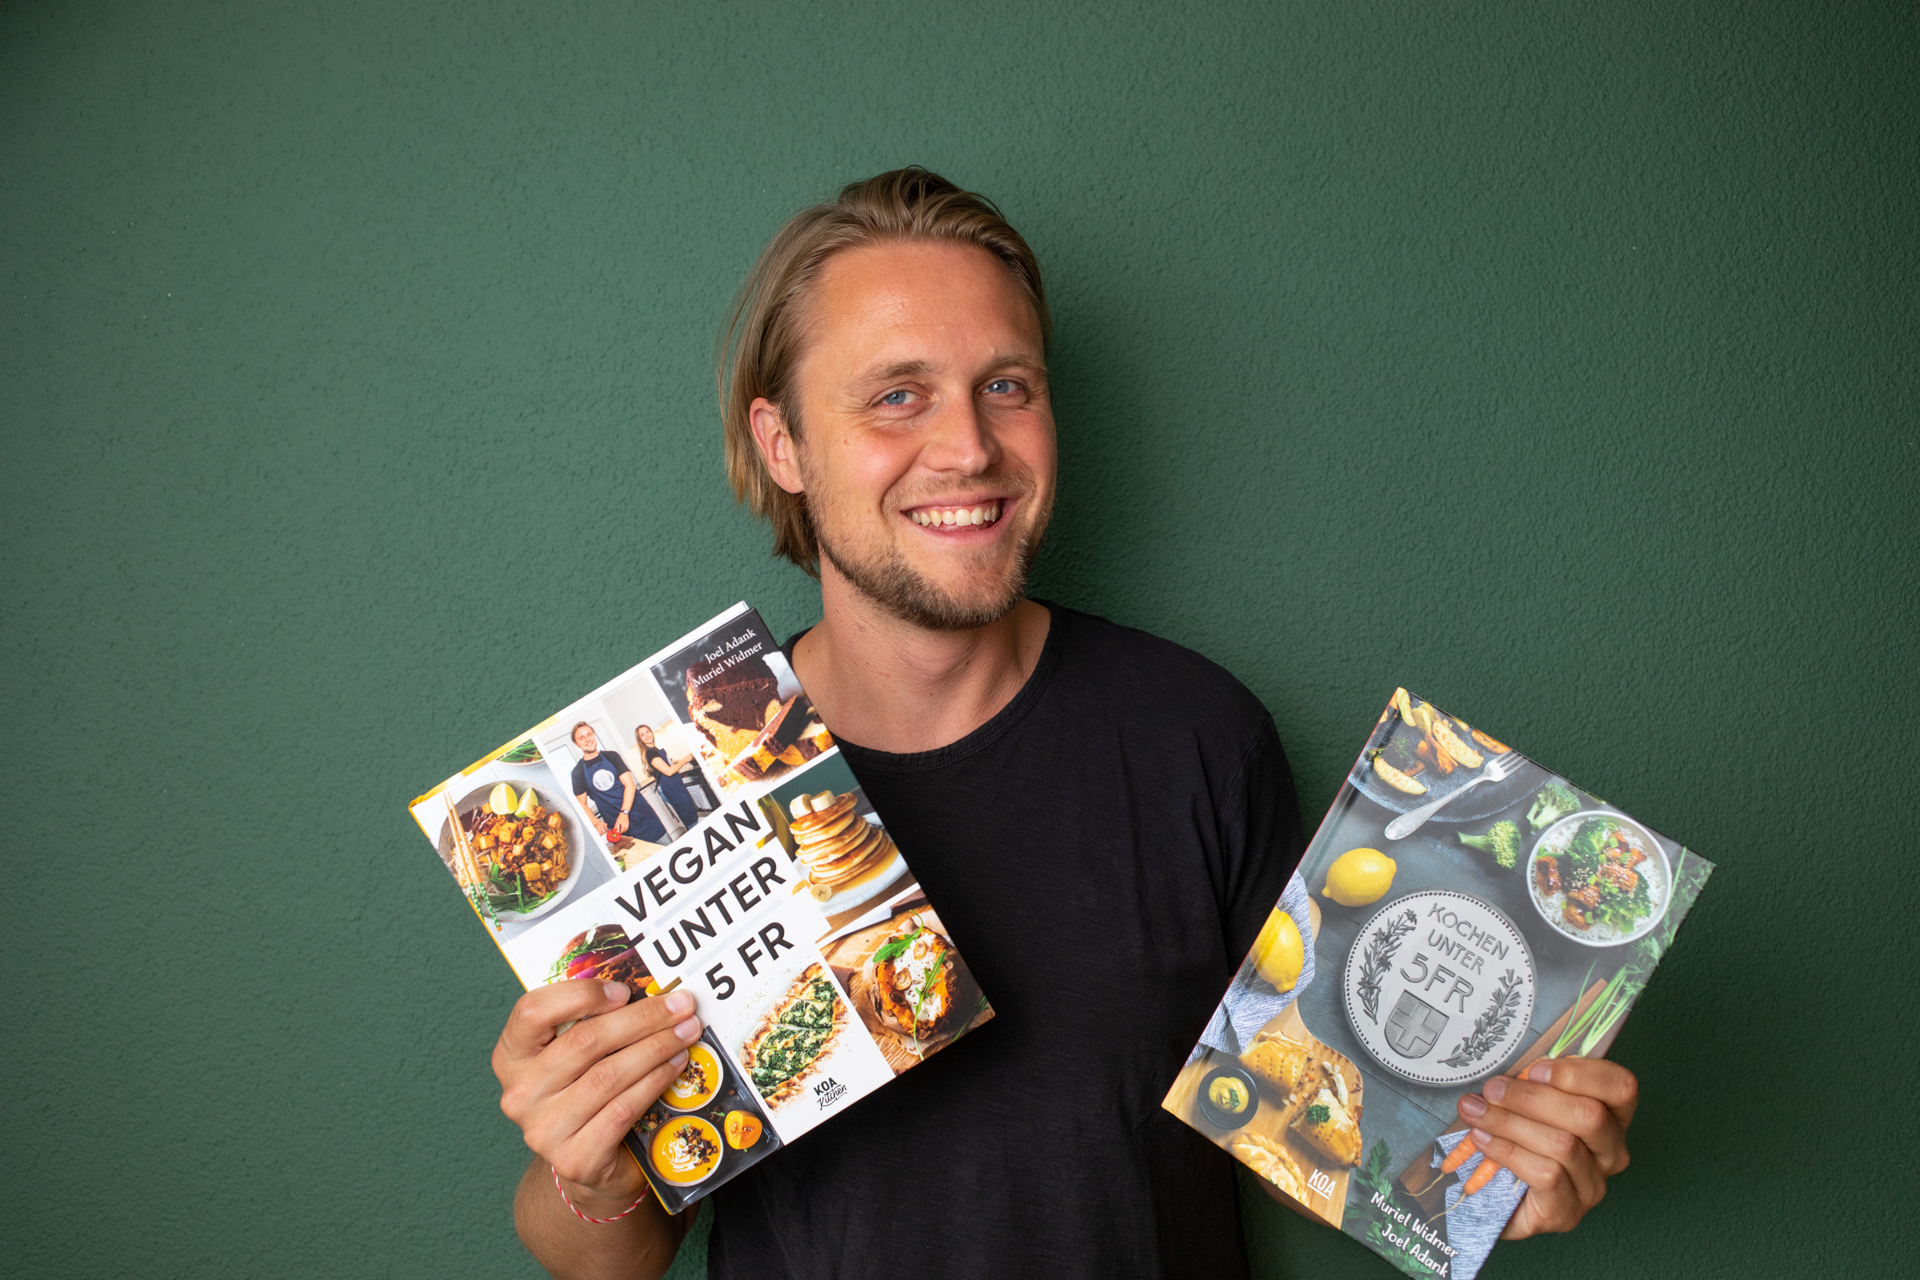 Joel ist Autor von zwei veganen Kochbüchern und hat im letzten Jahr über 250 neue Rezepte konzipiert.